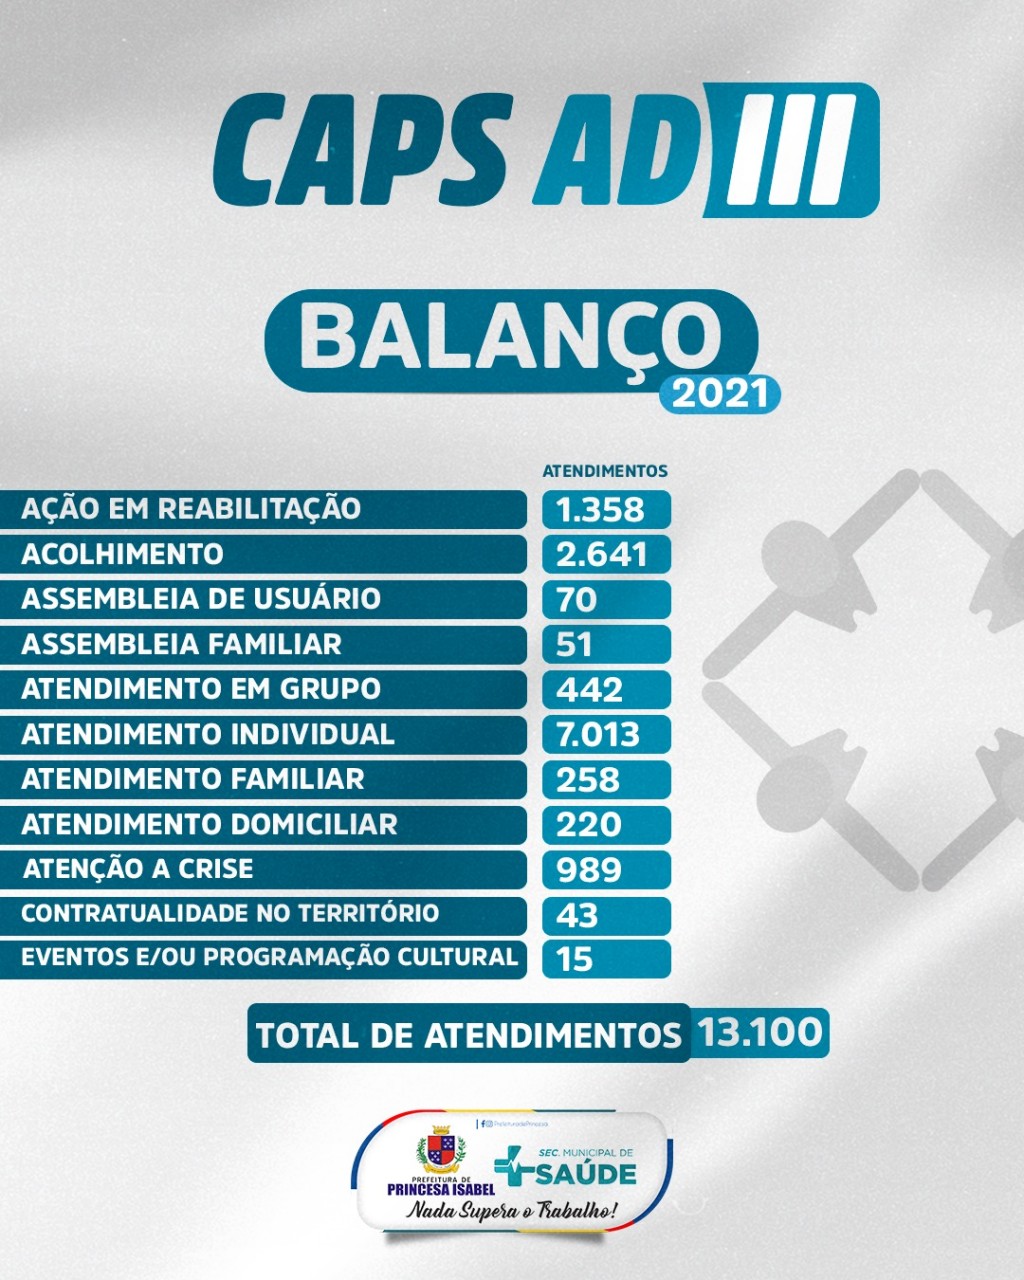 CAPS AD III REALIZA MAIS DE 13 MIL ATENDIMENTOS E/OU PROCEDIMENTOS EM 2021